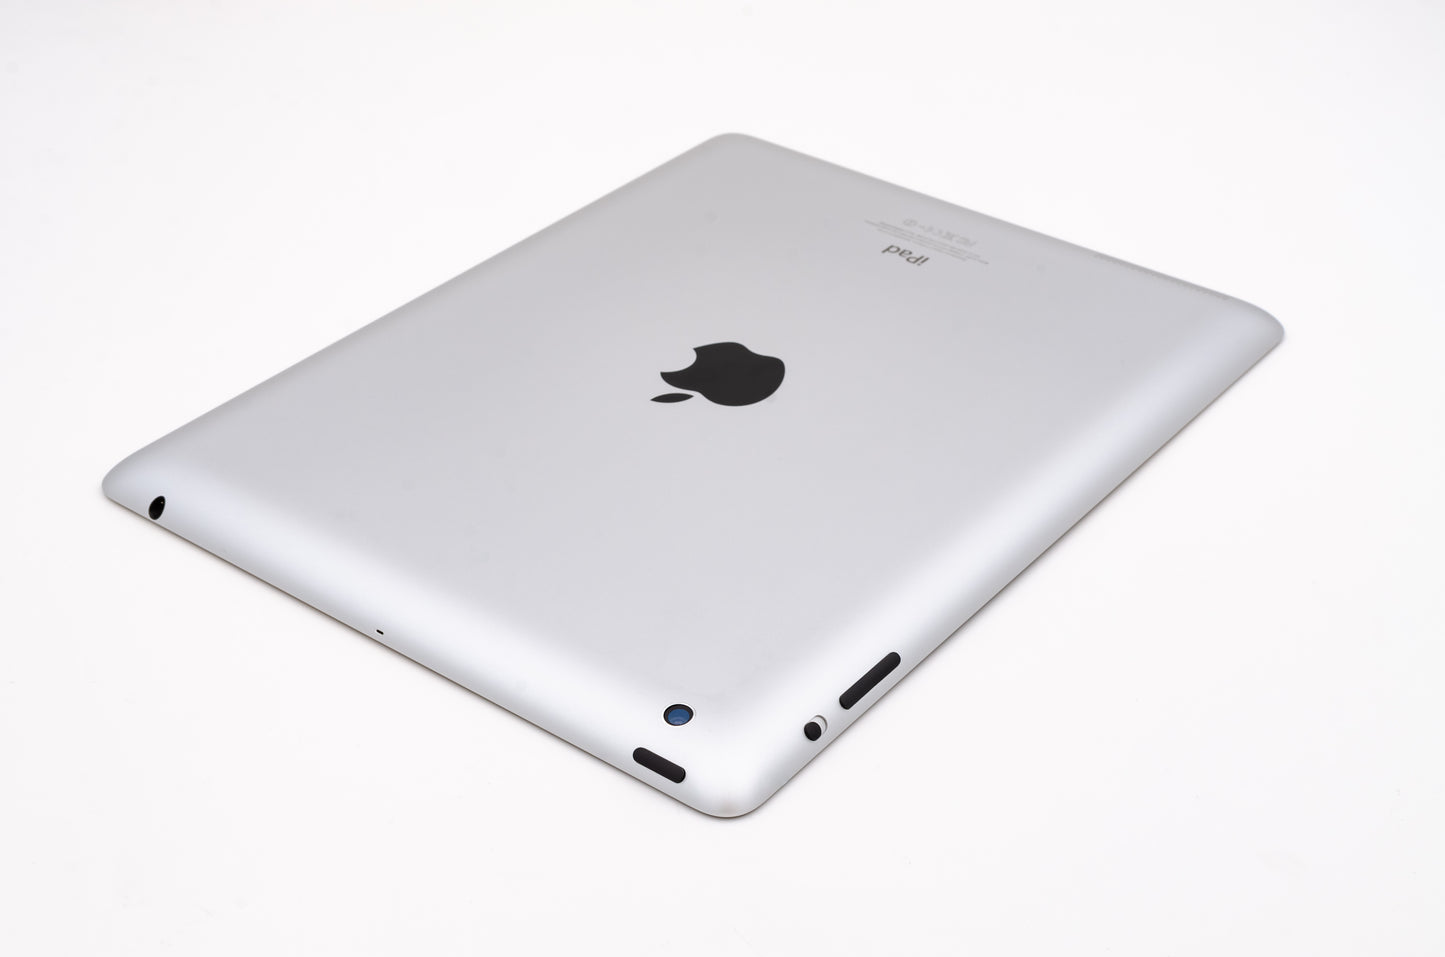 apple-2012-9.7-inch-ipad-4-a1458-silver/black-3